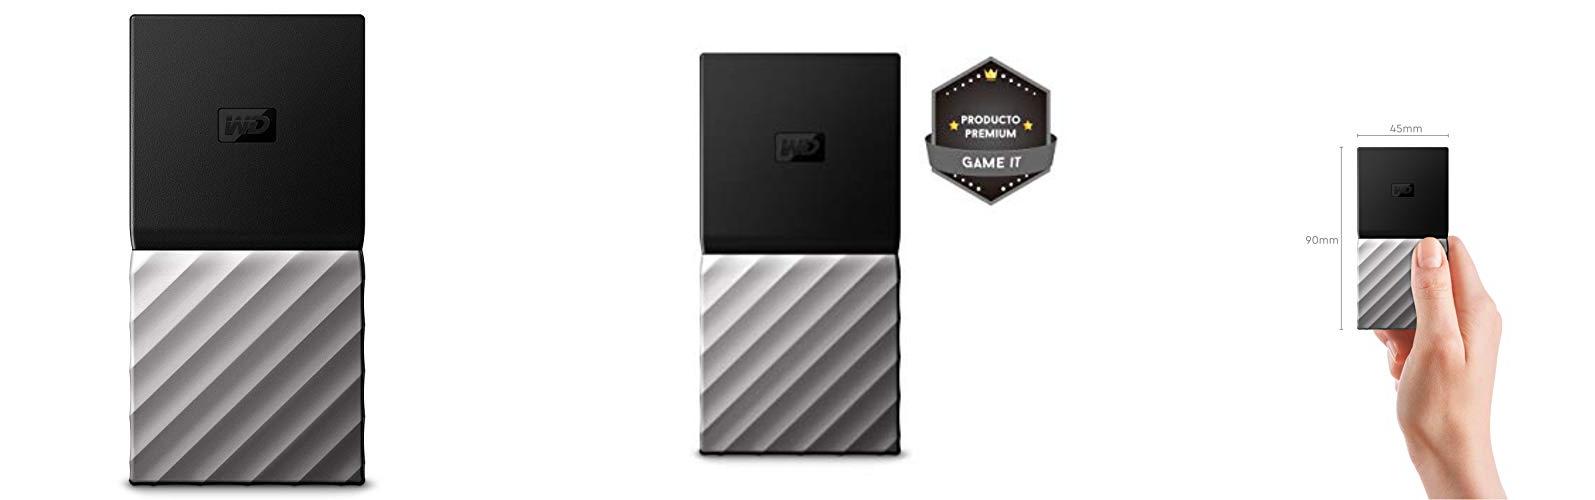 WD My Passport SSD: Almacenamiento portátil de 2TB en negro para PC, Xbox One y PS4